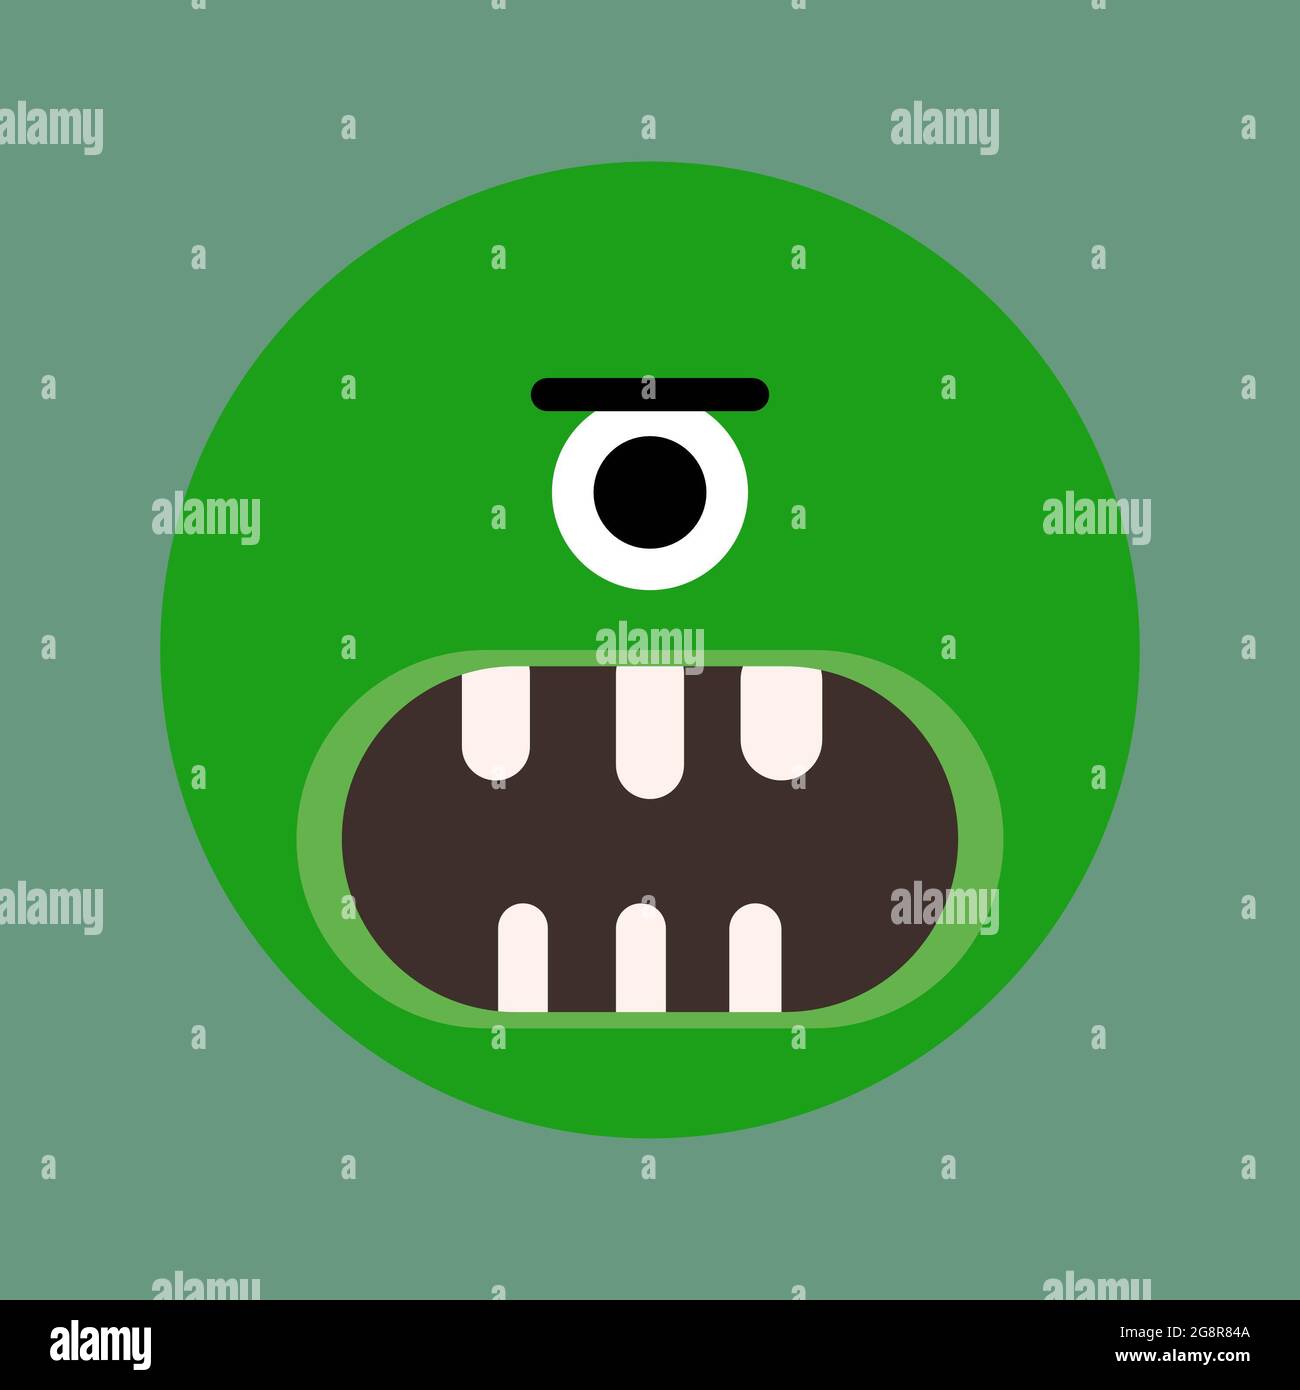 Illustrazione minimalista di un verde arrabbiato ciclops Foto Stock